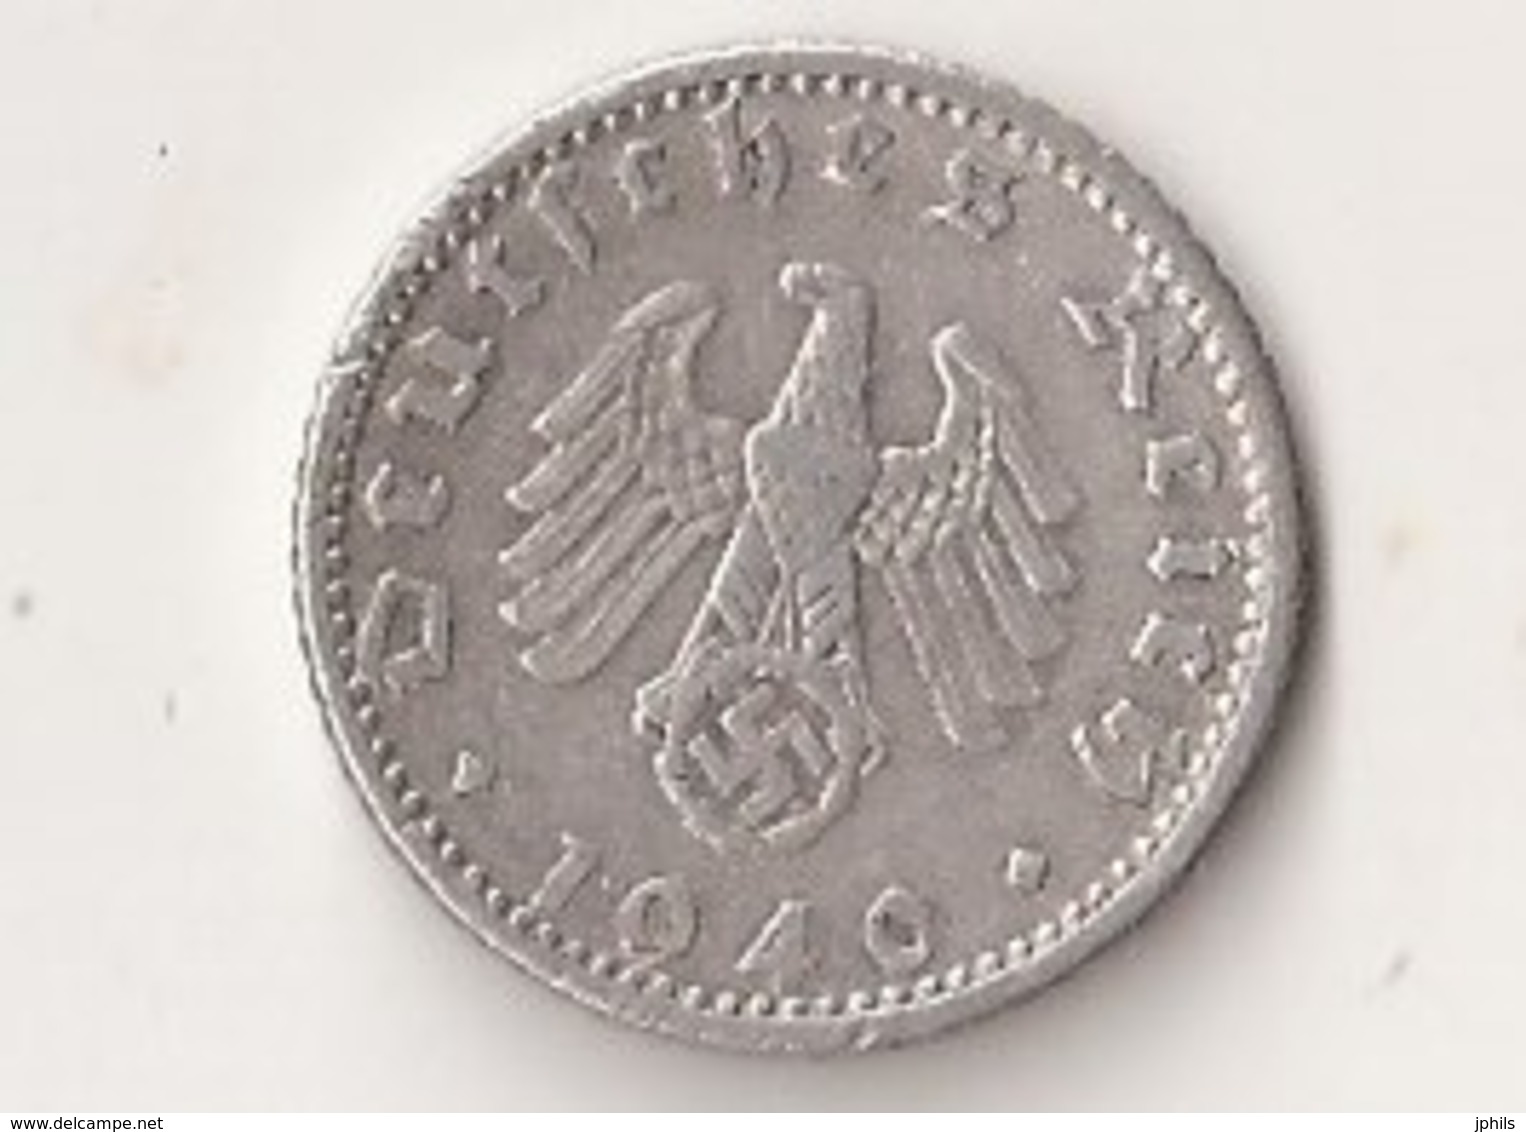 50 REICHSPFENNIG 1940 D - 50 Reichspfennig